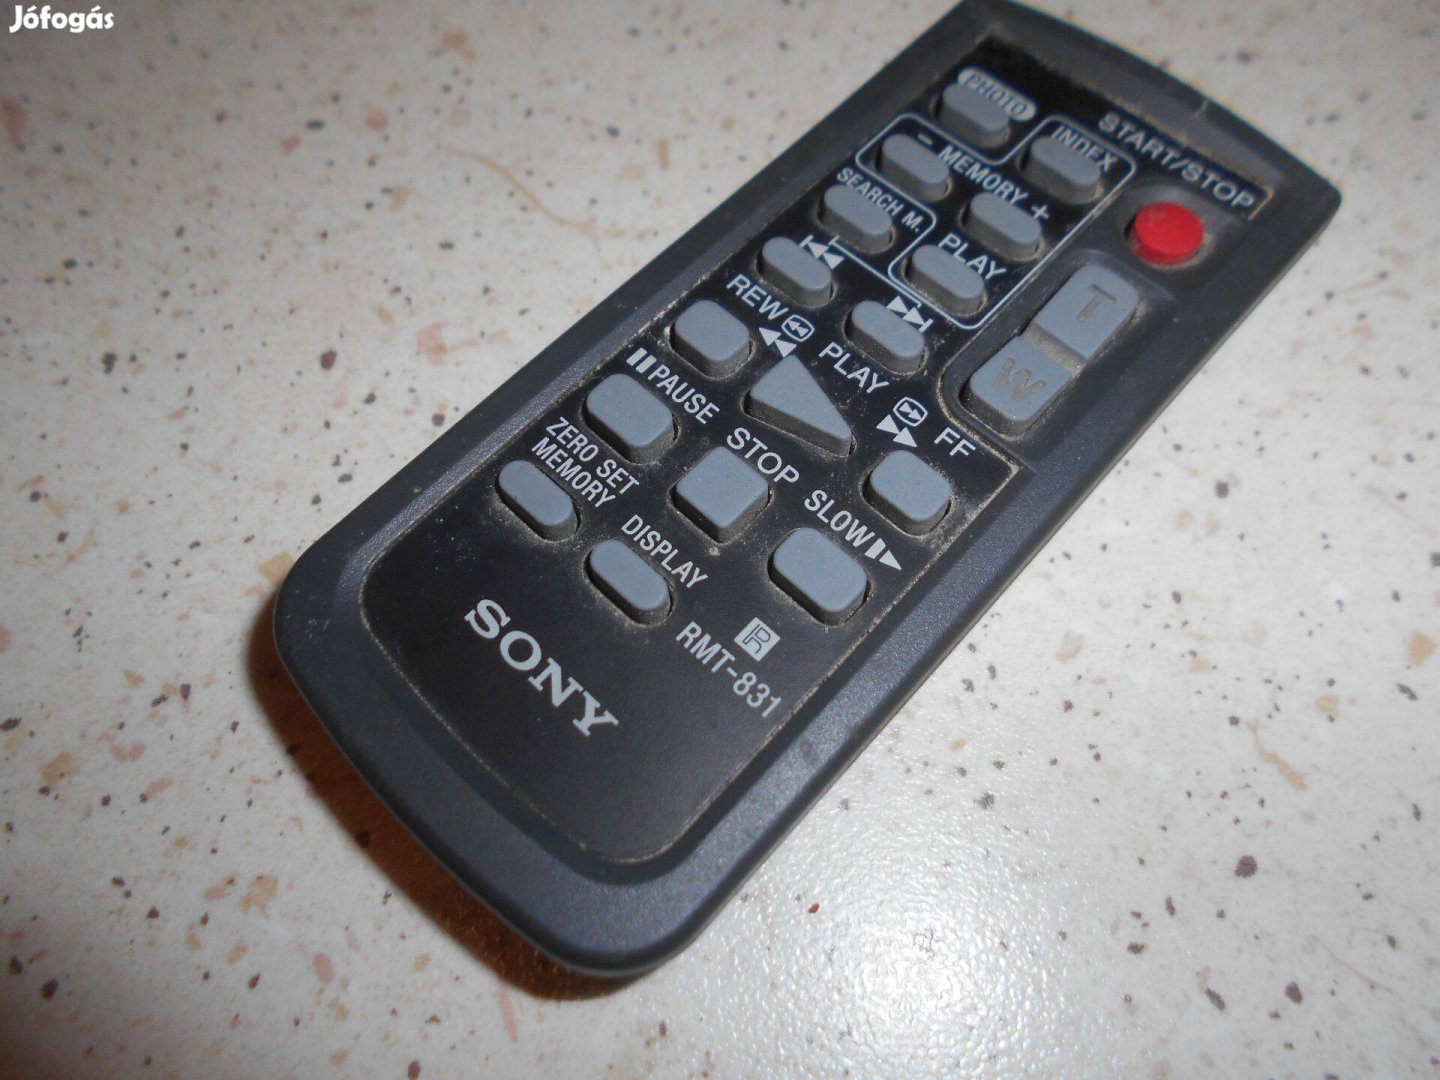 Sony RMT-831 kamera távirányító